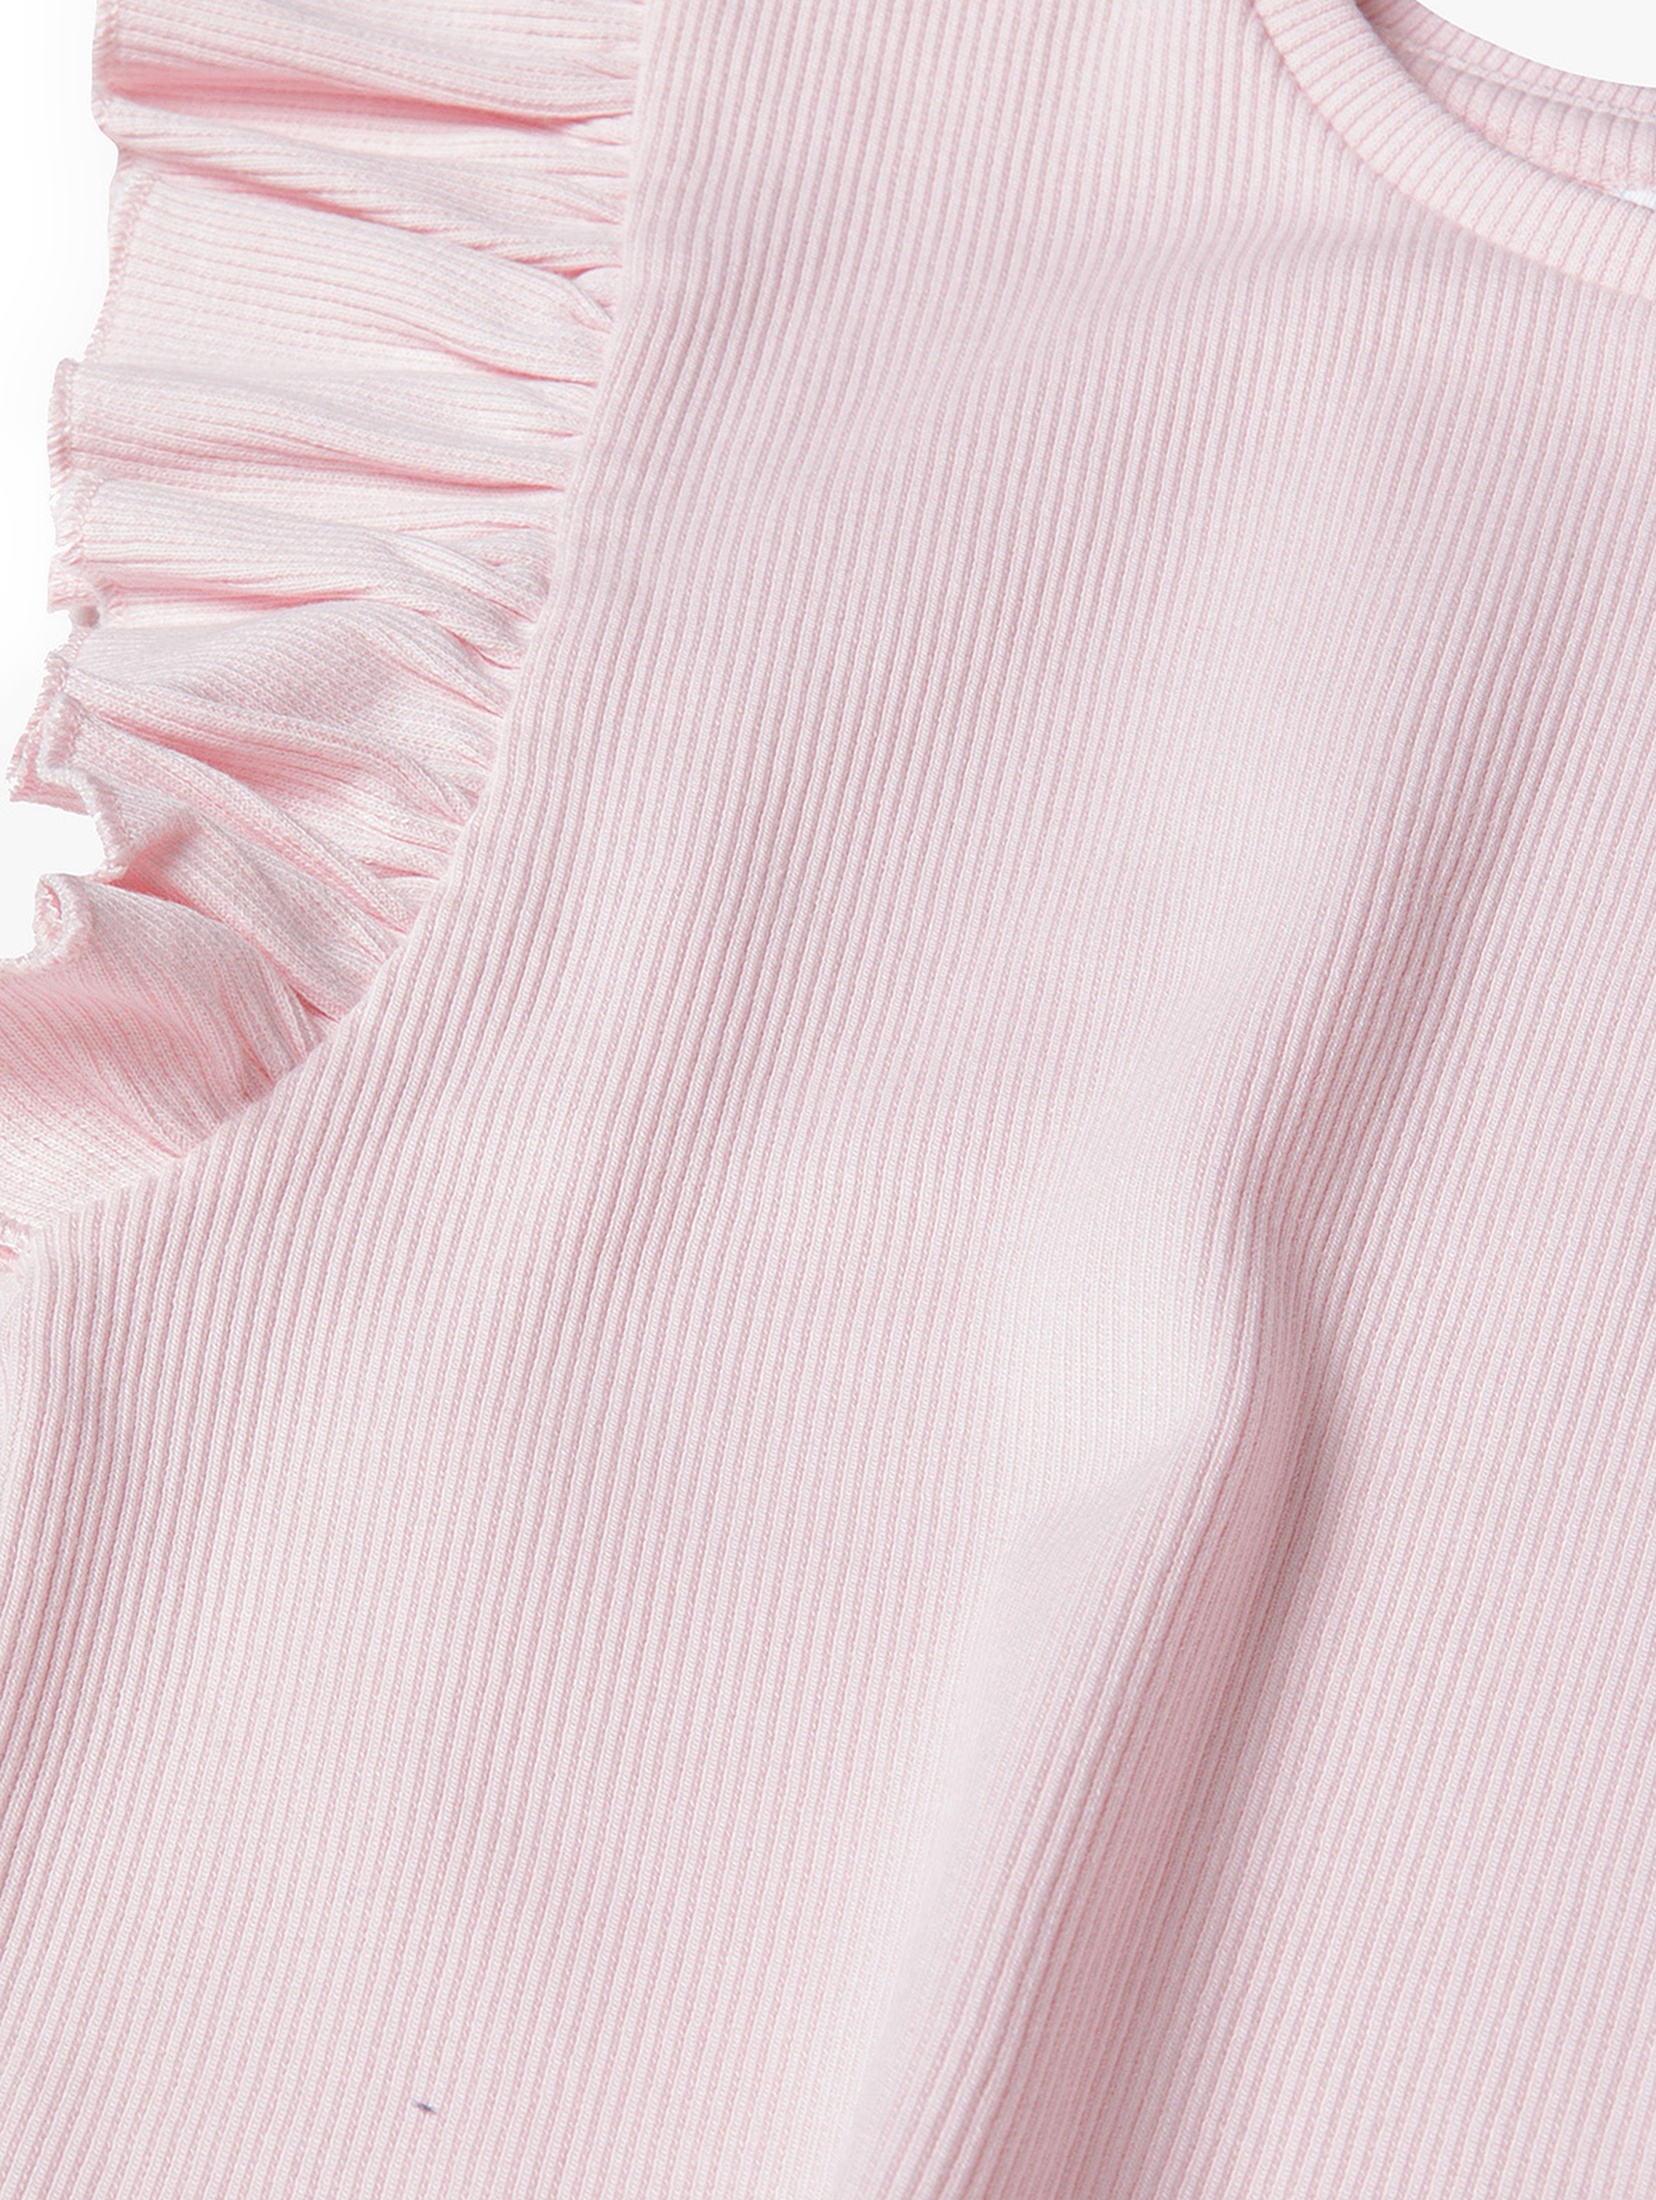 Niemowlęca bluzka z krótkim rękawem i falbanką- różowa